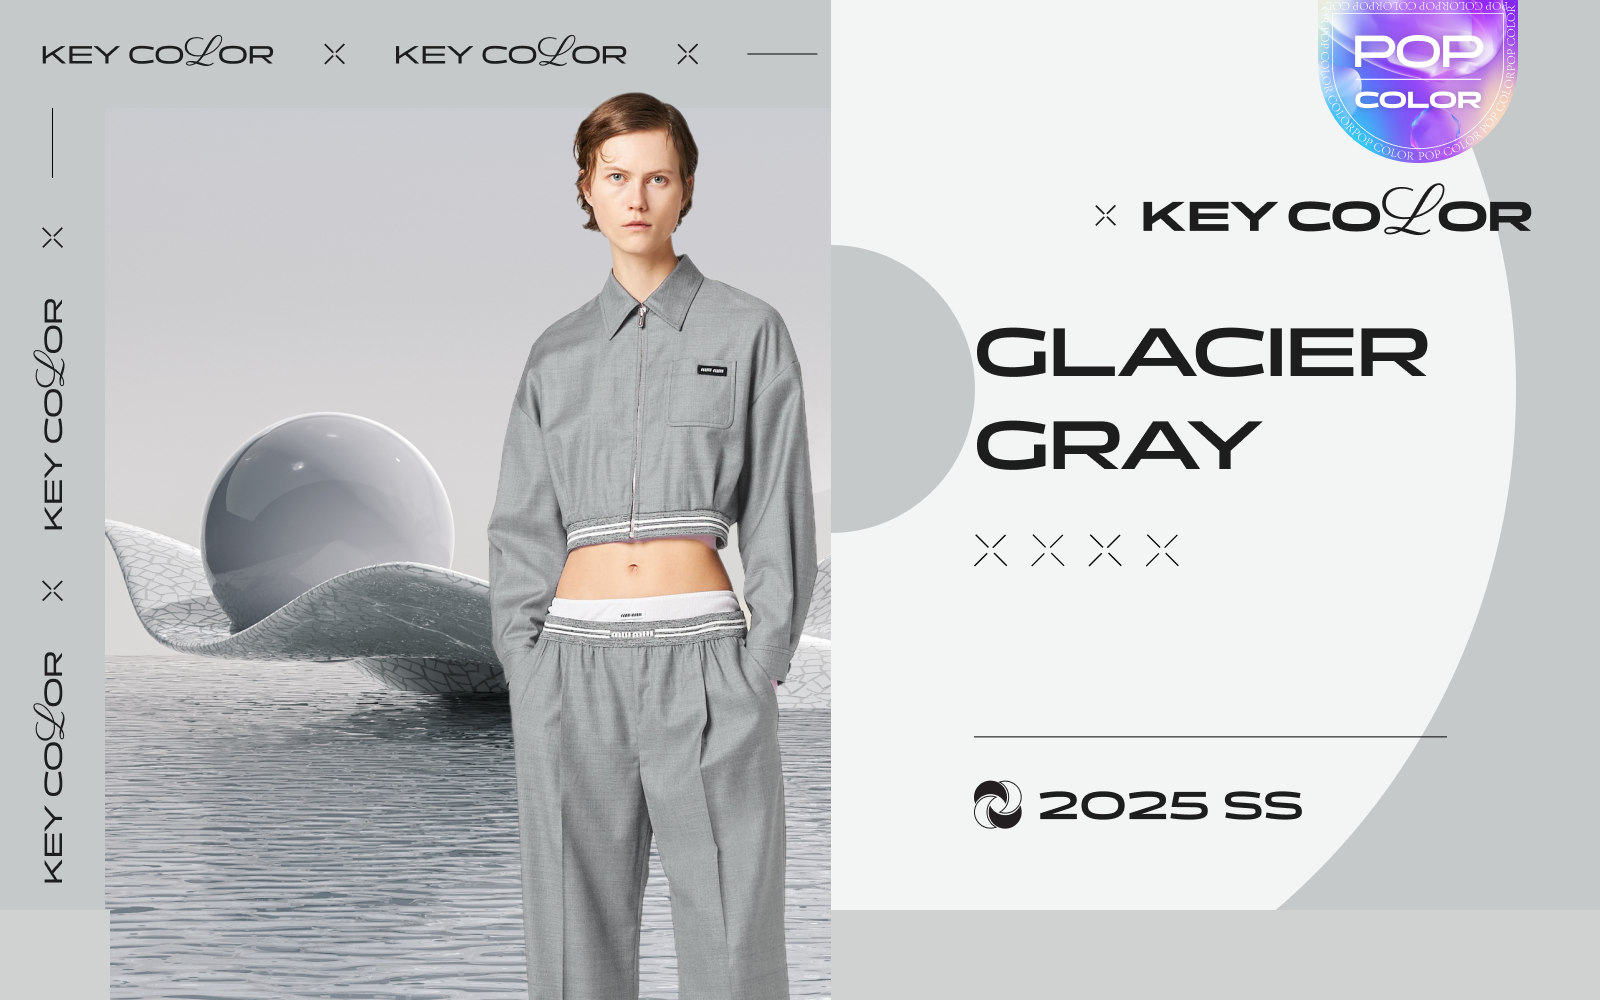 Glacier Gray -- The Color Trend for Womenswear